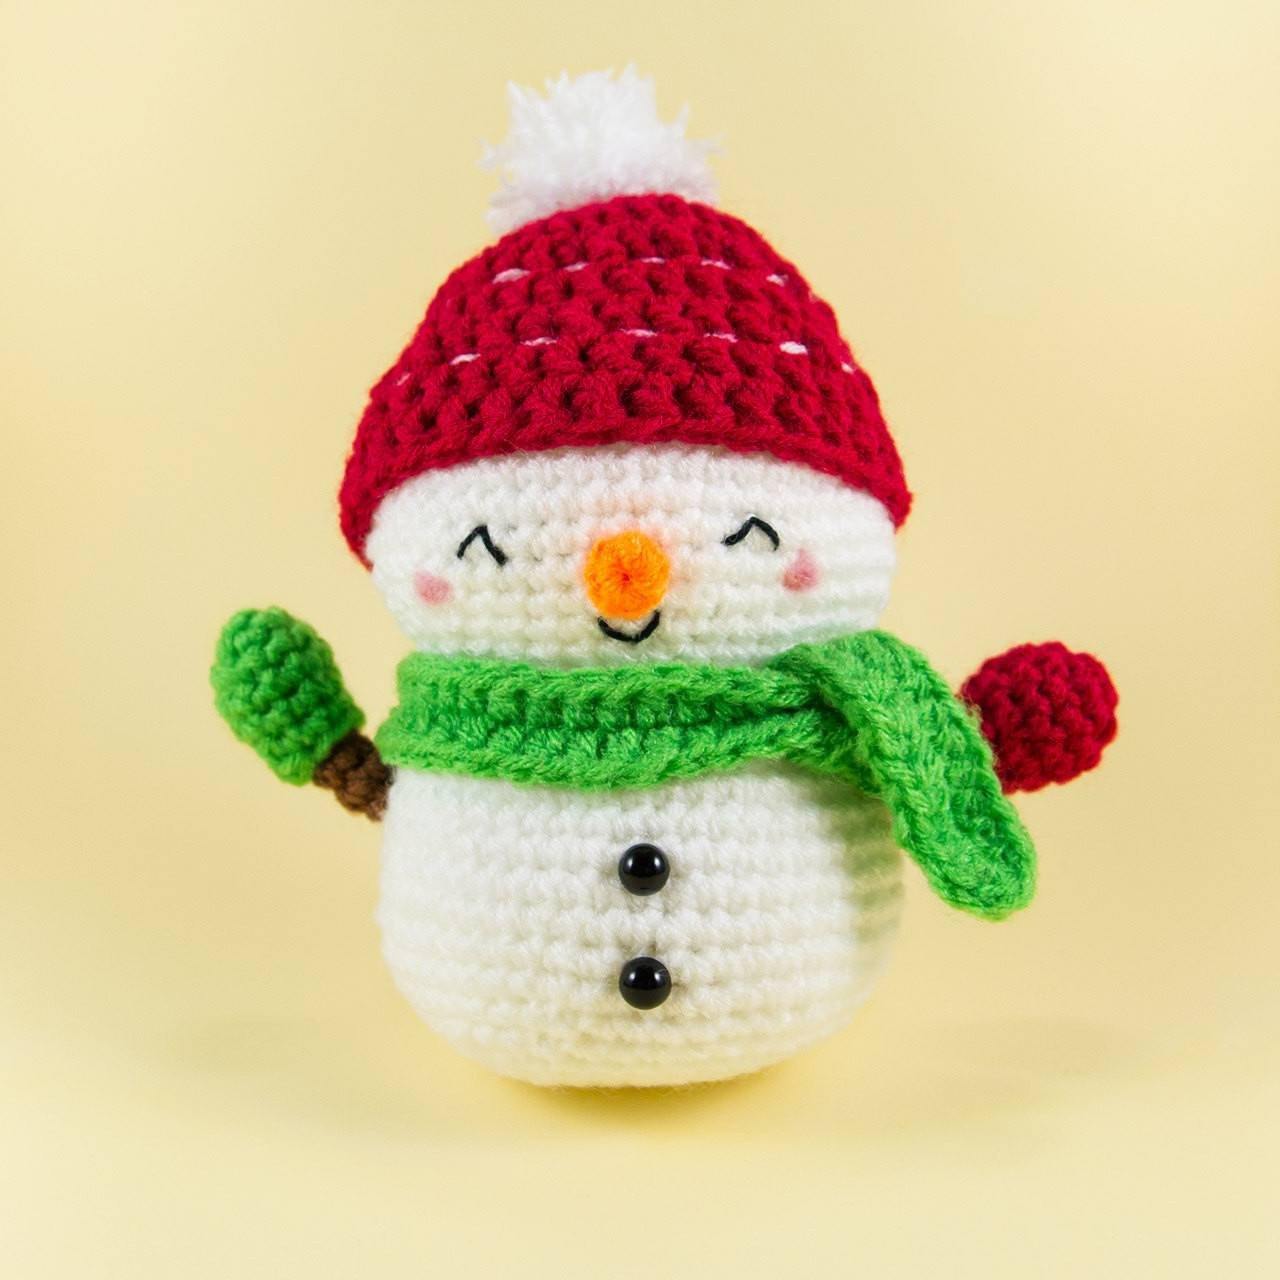 Crochet snowman amigurumi for Christmas Decor